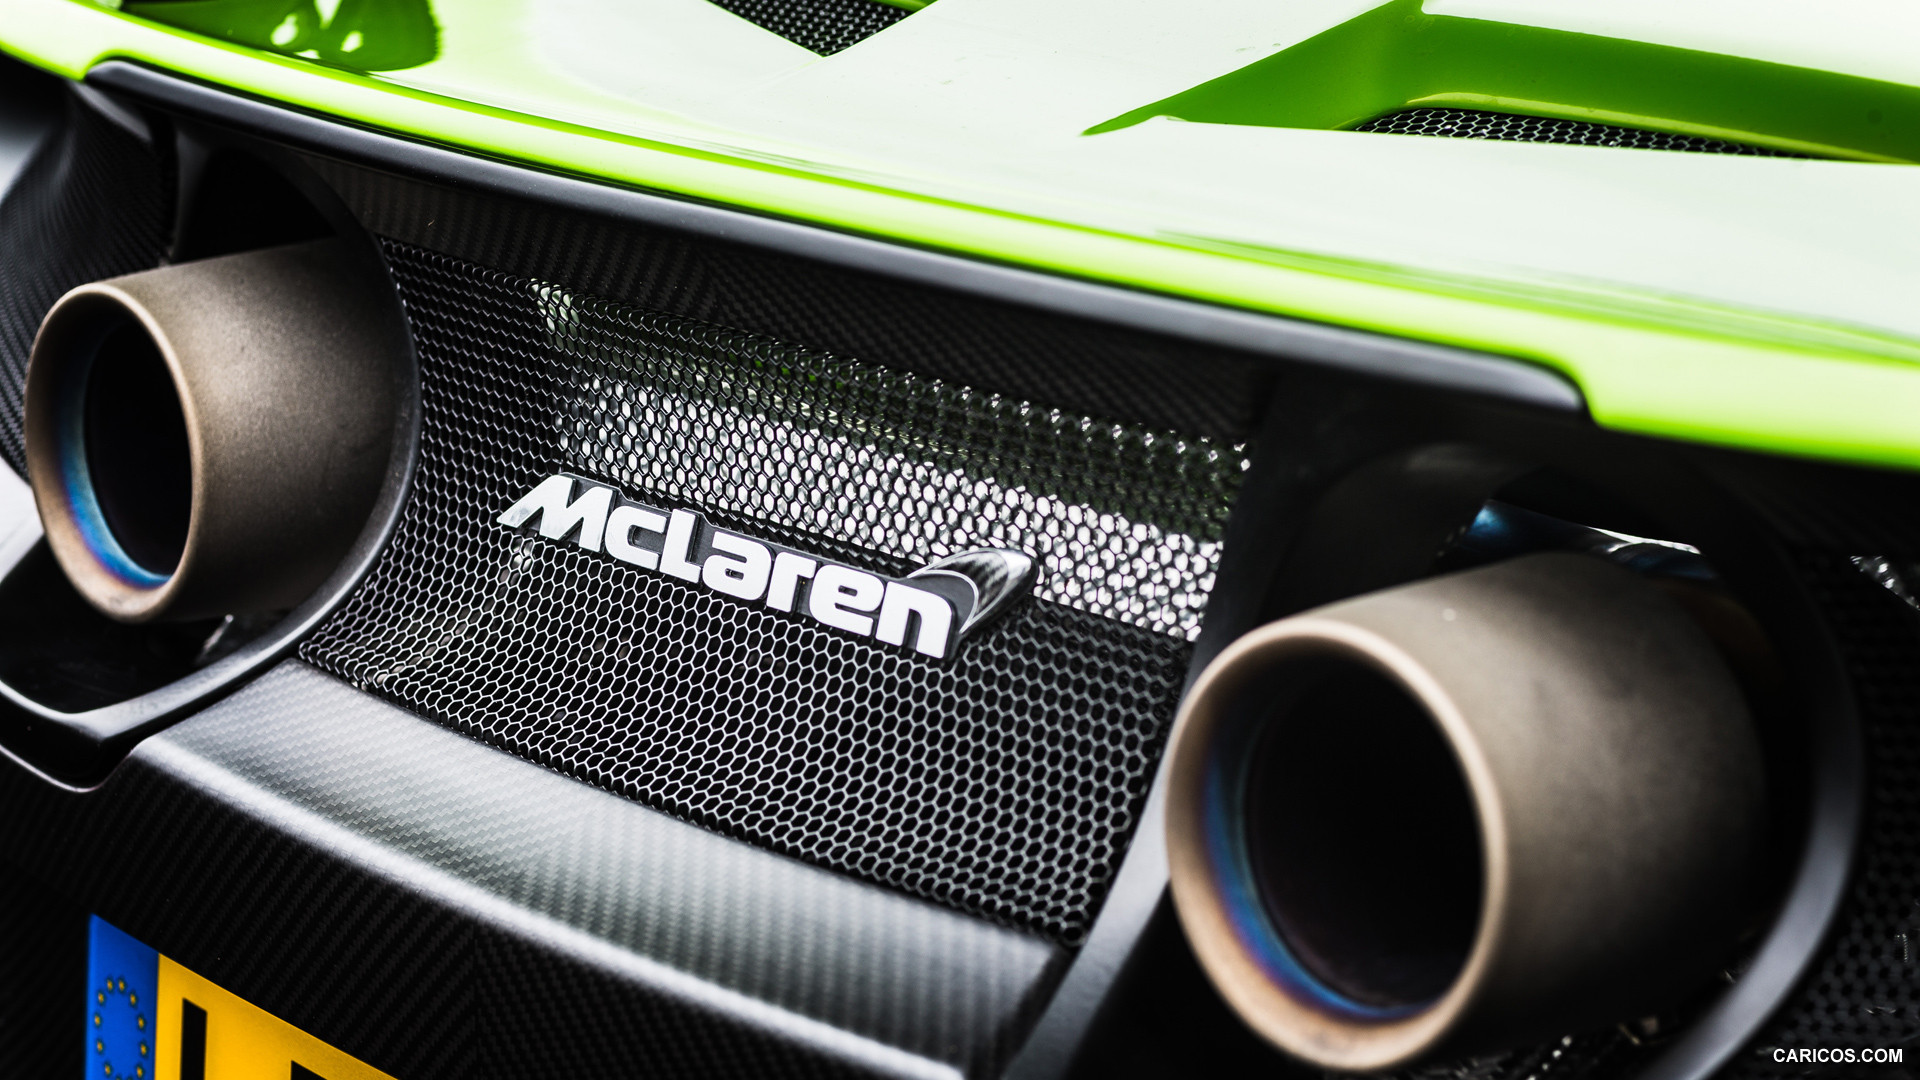 2016 McLaren 675LT  - Exhaust, #103 of 198